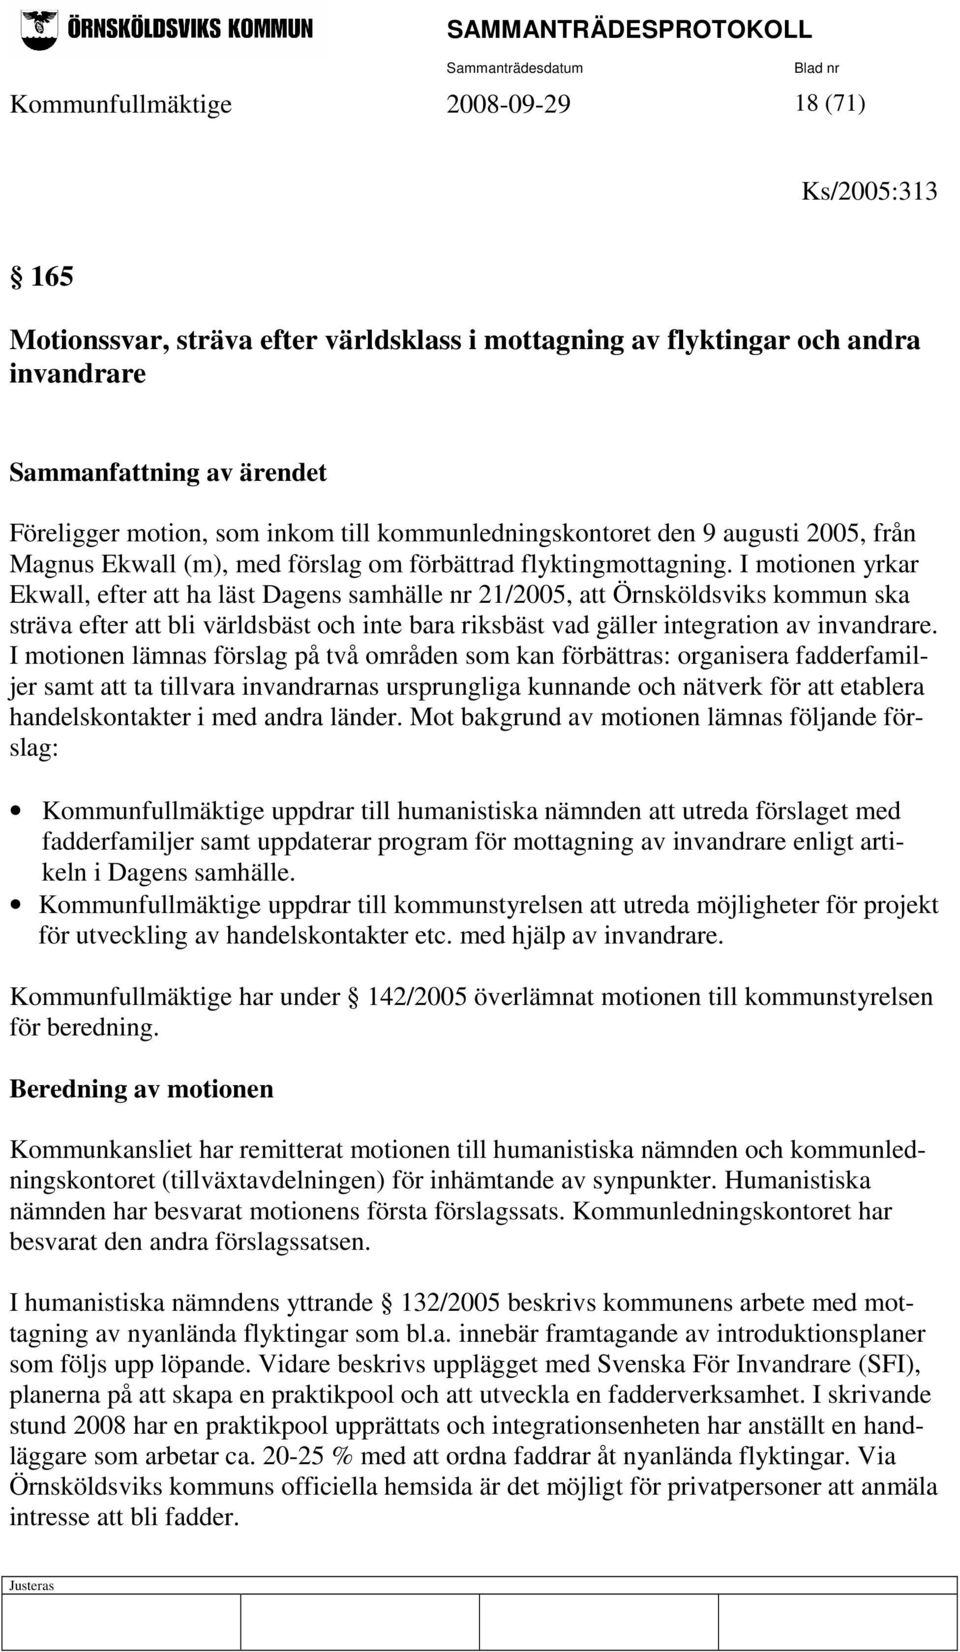 I motionen yrkar Ekwall, efter att ha läst Dagens samhälle nr 21/2005, att Örnsköldsviks kommun ska sträva efter att bli världsbäst och inte bara riksbäst vad gäller integration av invandrare.